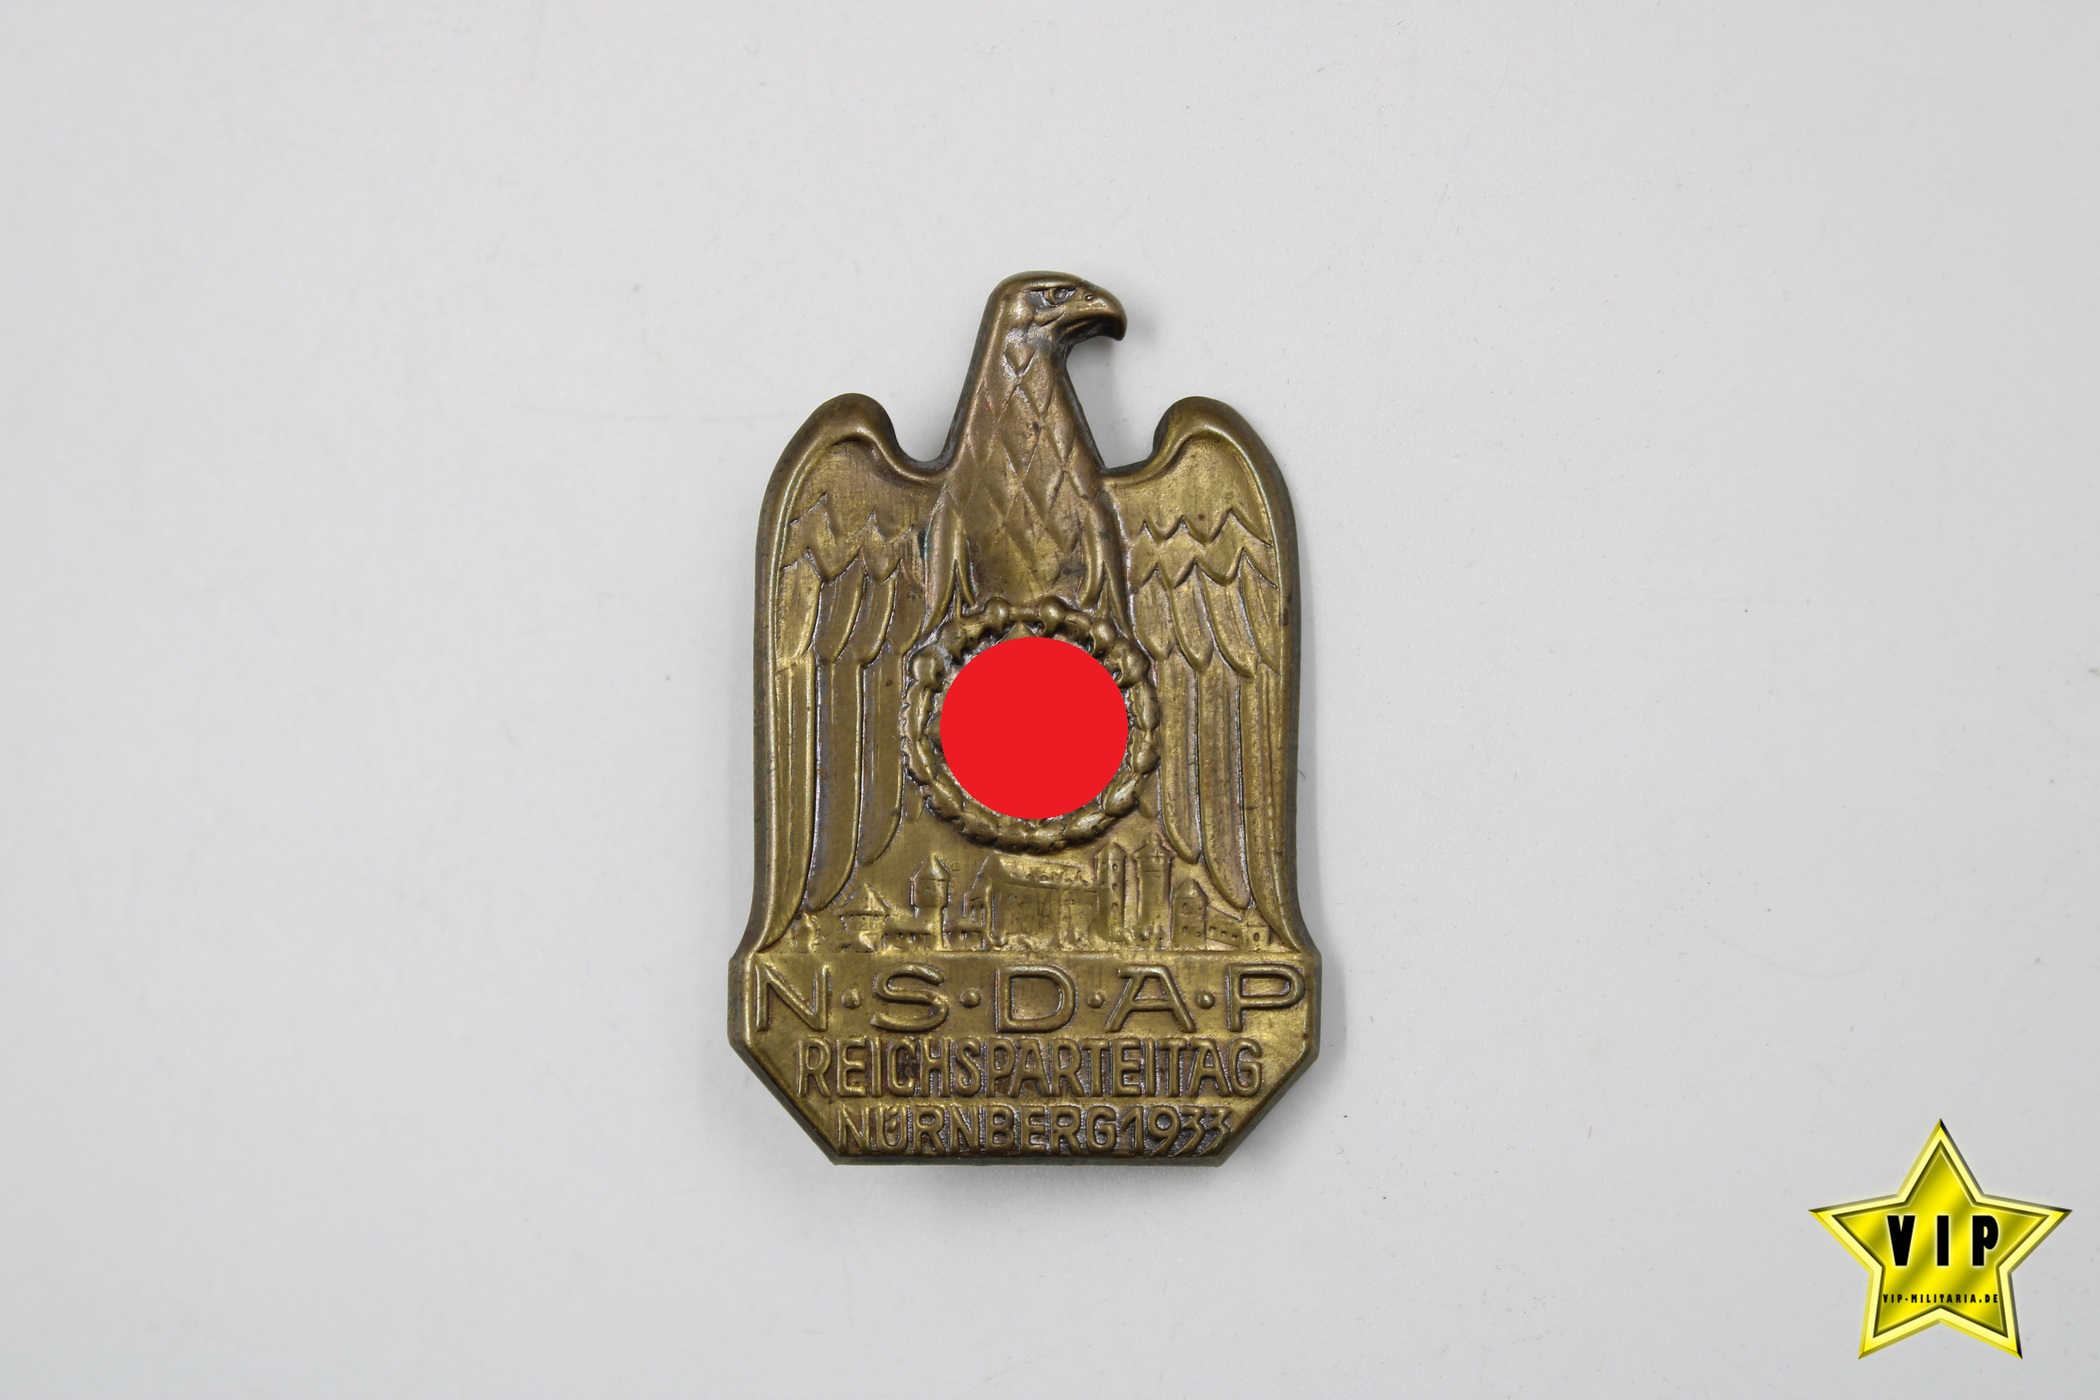 NSDAP Reichsparteitag Nürnberg 1933 